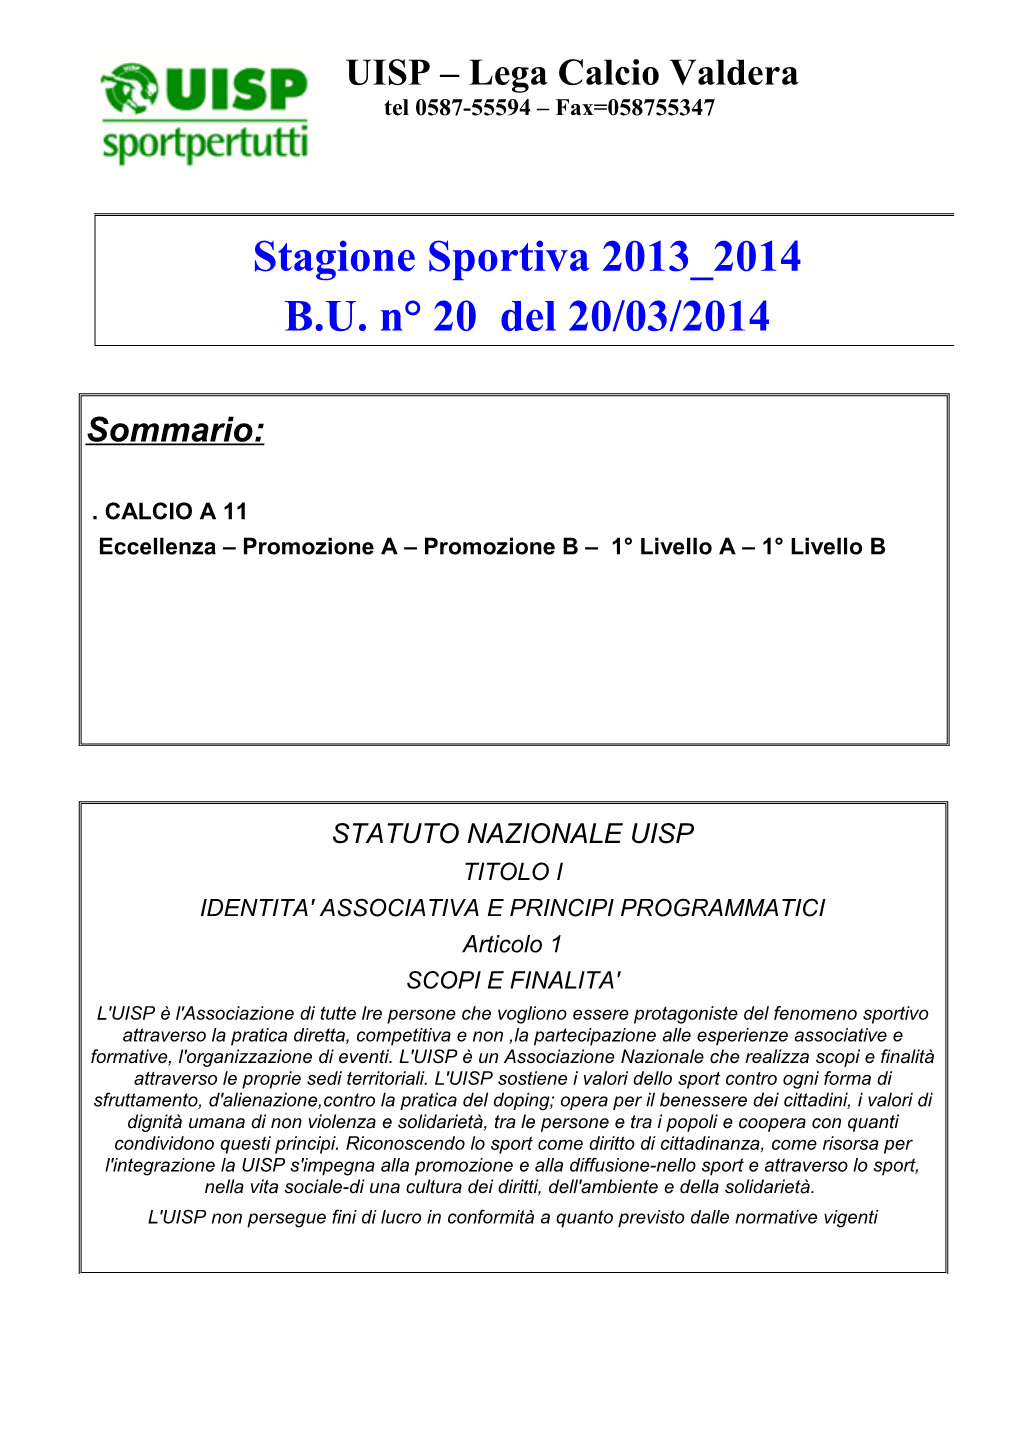 Stagione Sportiva 2013 2014 B.U. N° 20 Del 20/03/2014